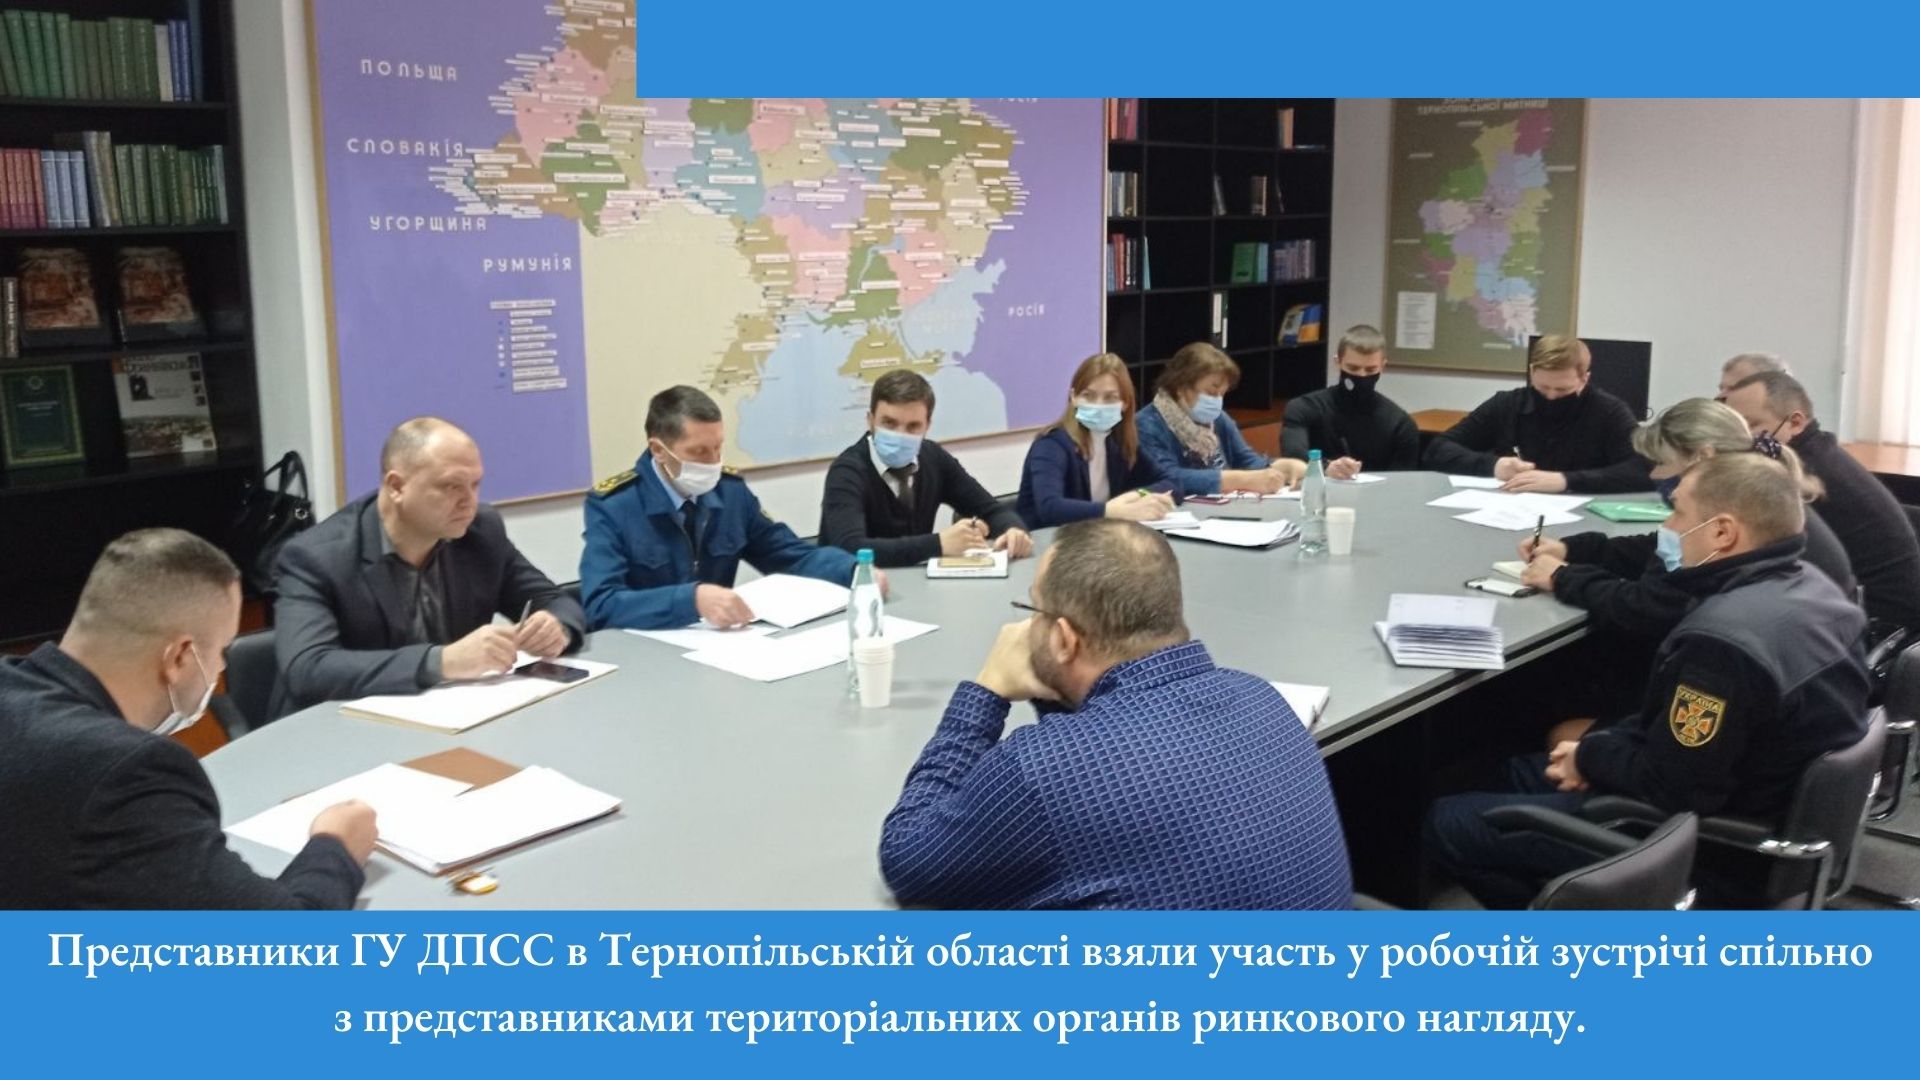 Представники ГУ ДПСС в Тернопільській області взяли участь у робочій зустрічі спільно з представниками територіальних органів ринкового нагляду